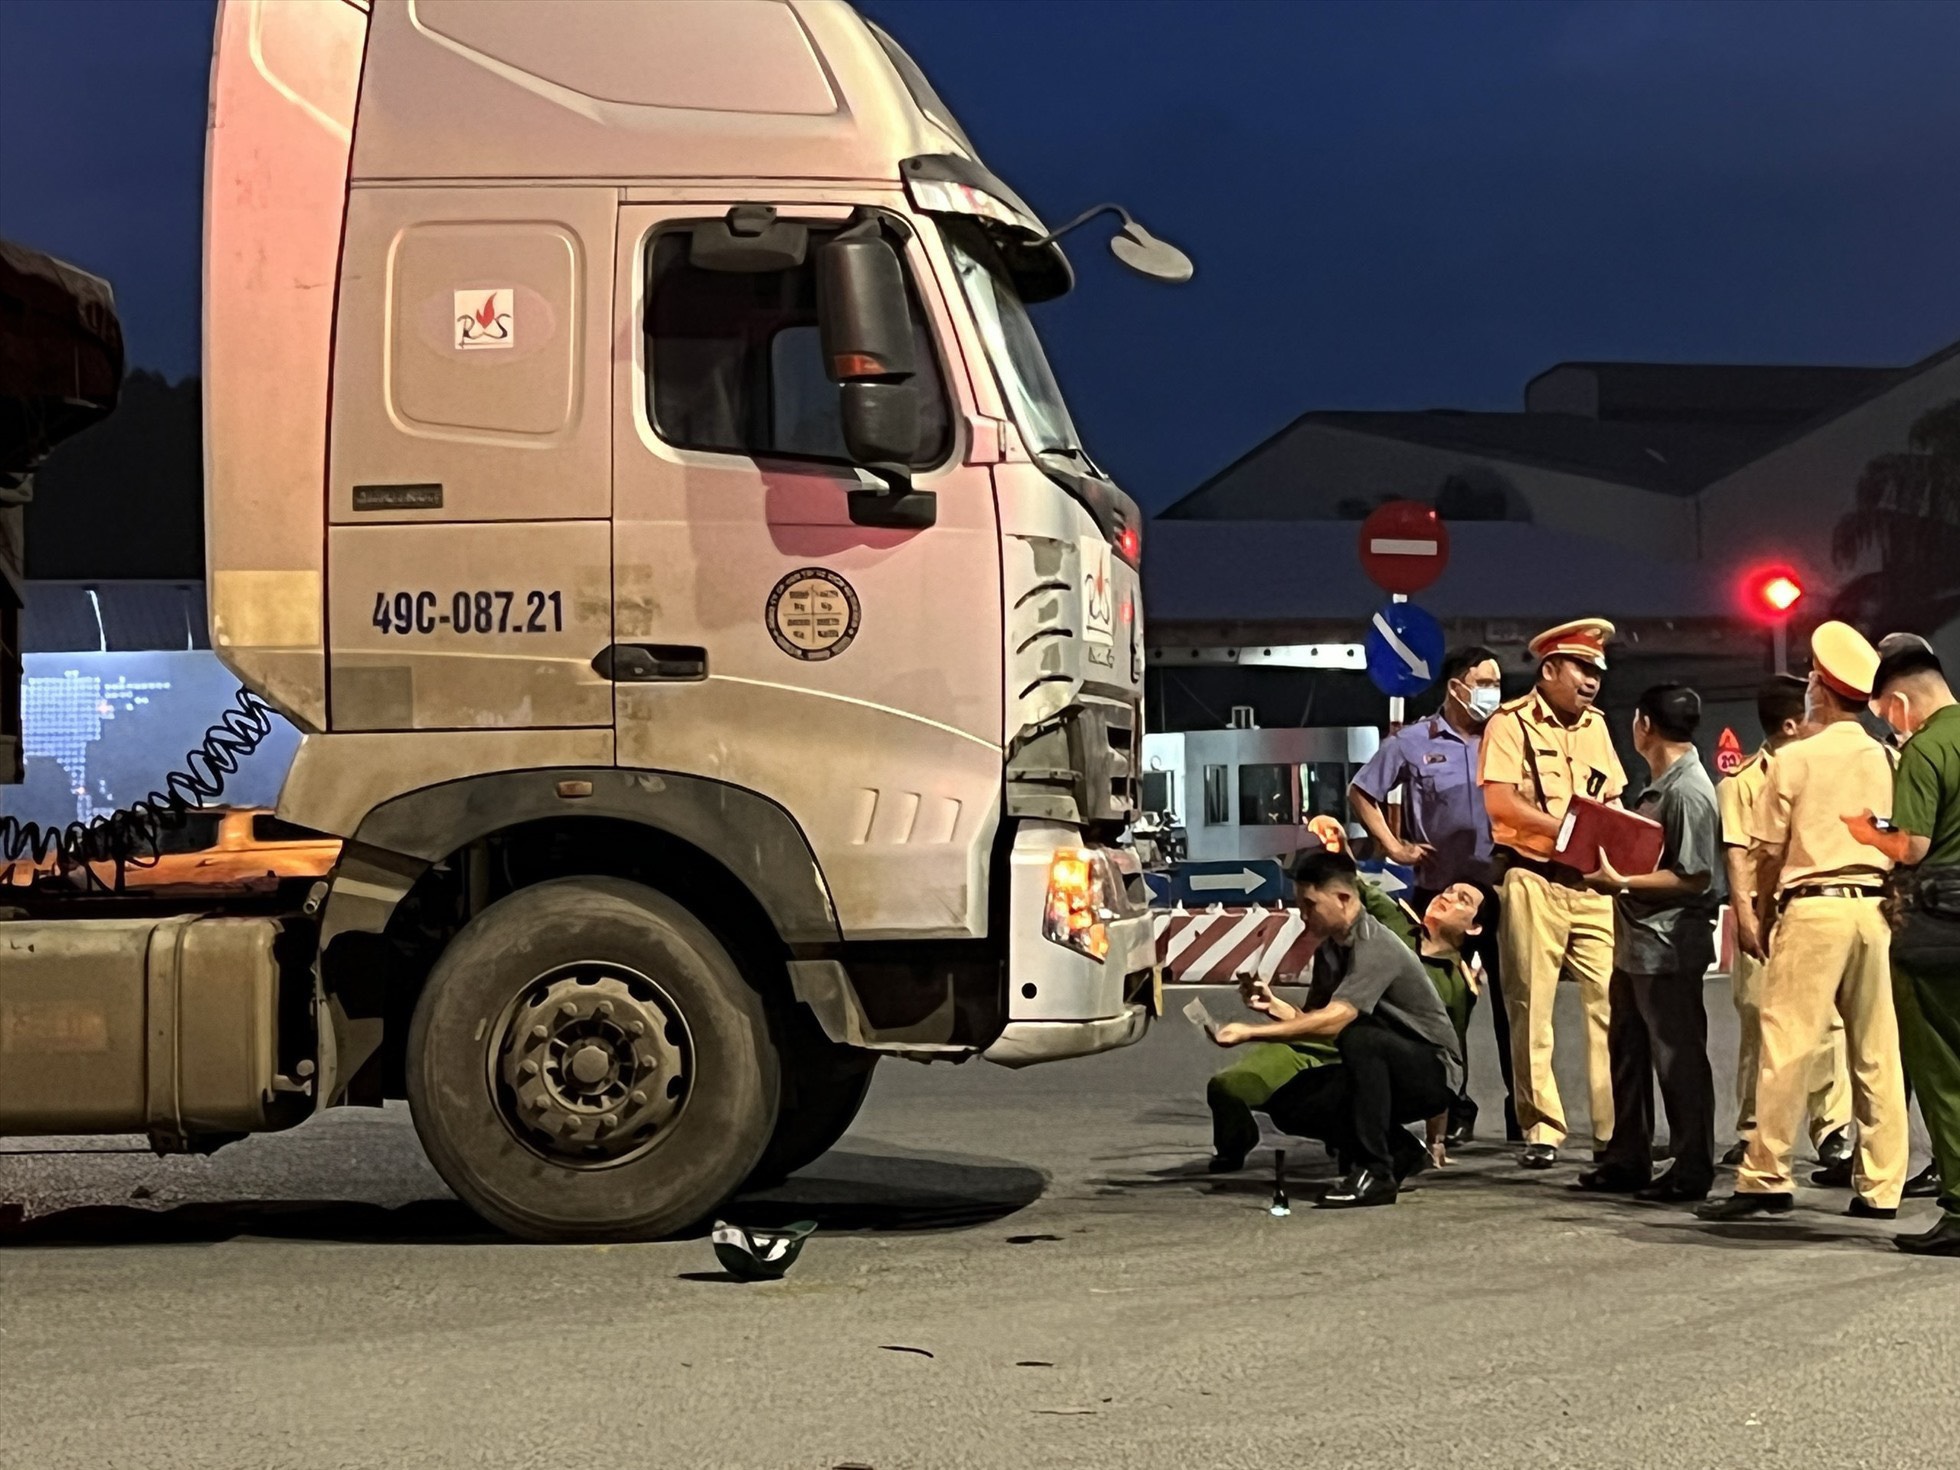 Tai nạn giao thông là một trong những vấn đề đang được quan tâm và xử lý mạnh mẽ nhất tại Việt Nam. Thông qua hình ảnh, chúng ta có thể thấy rõ hơn sự thương tâm của các vụ tai nạn và cảm thấy sự quan tâm của chính phủ trong việc đảm bảo an toàn giao thông cho cộng đồng.